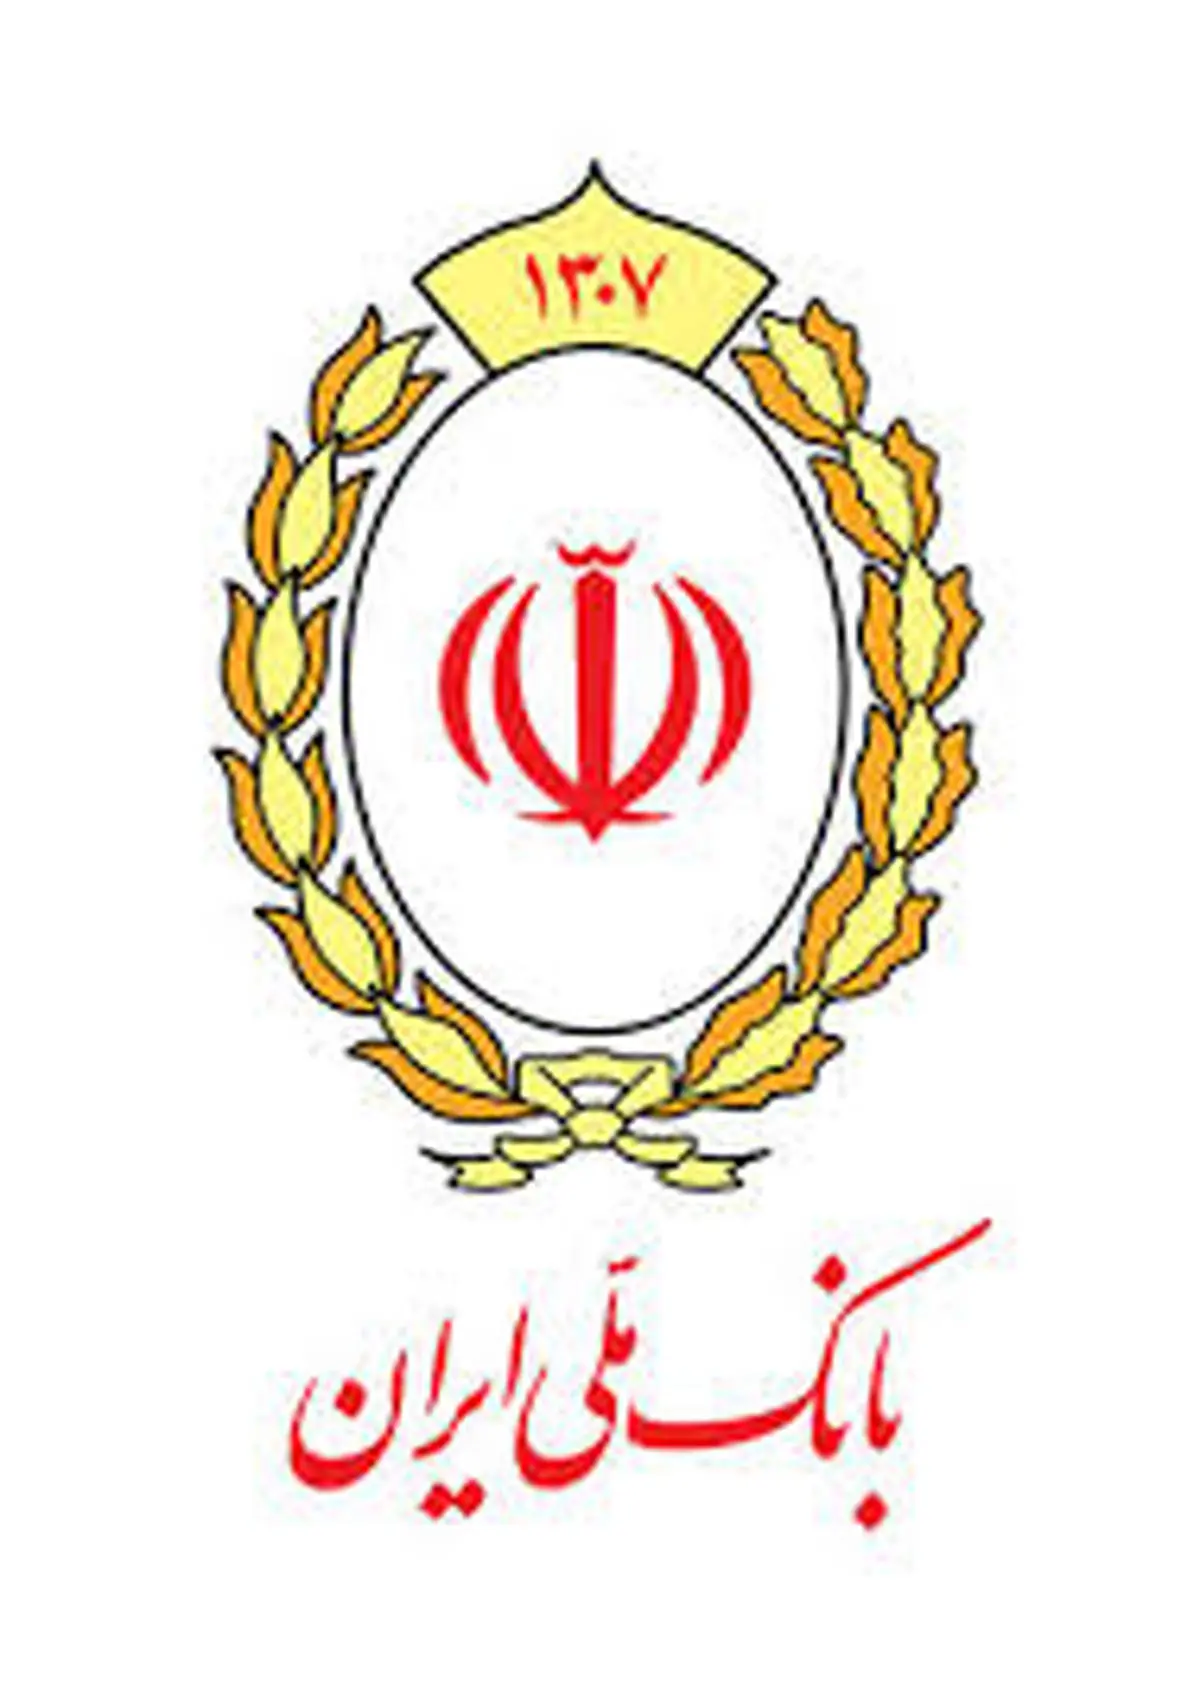 تفاهم نامه همکاری بانک ملی ایران و دانشگاه علوم پزشکی قم در راستای مسئولیت های اجتماعی

